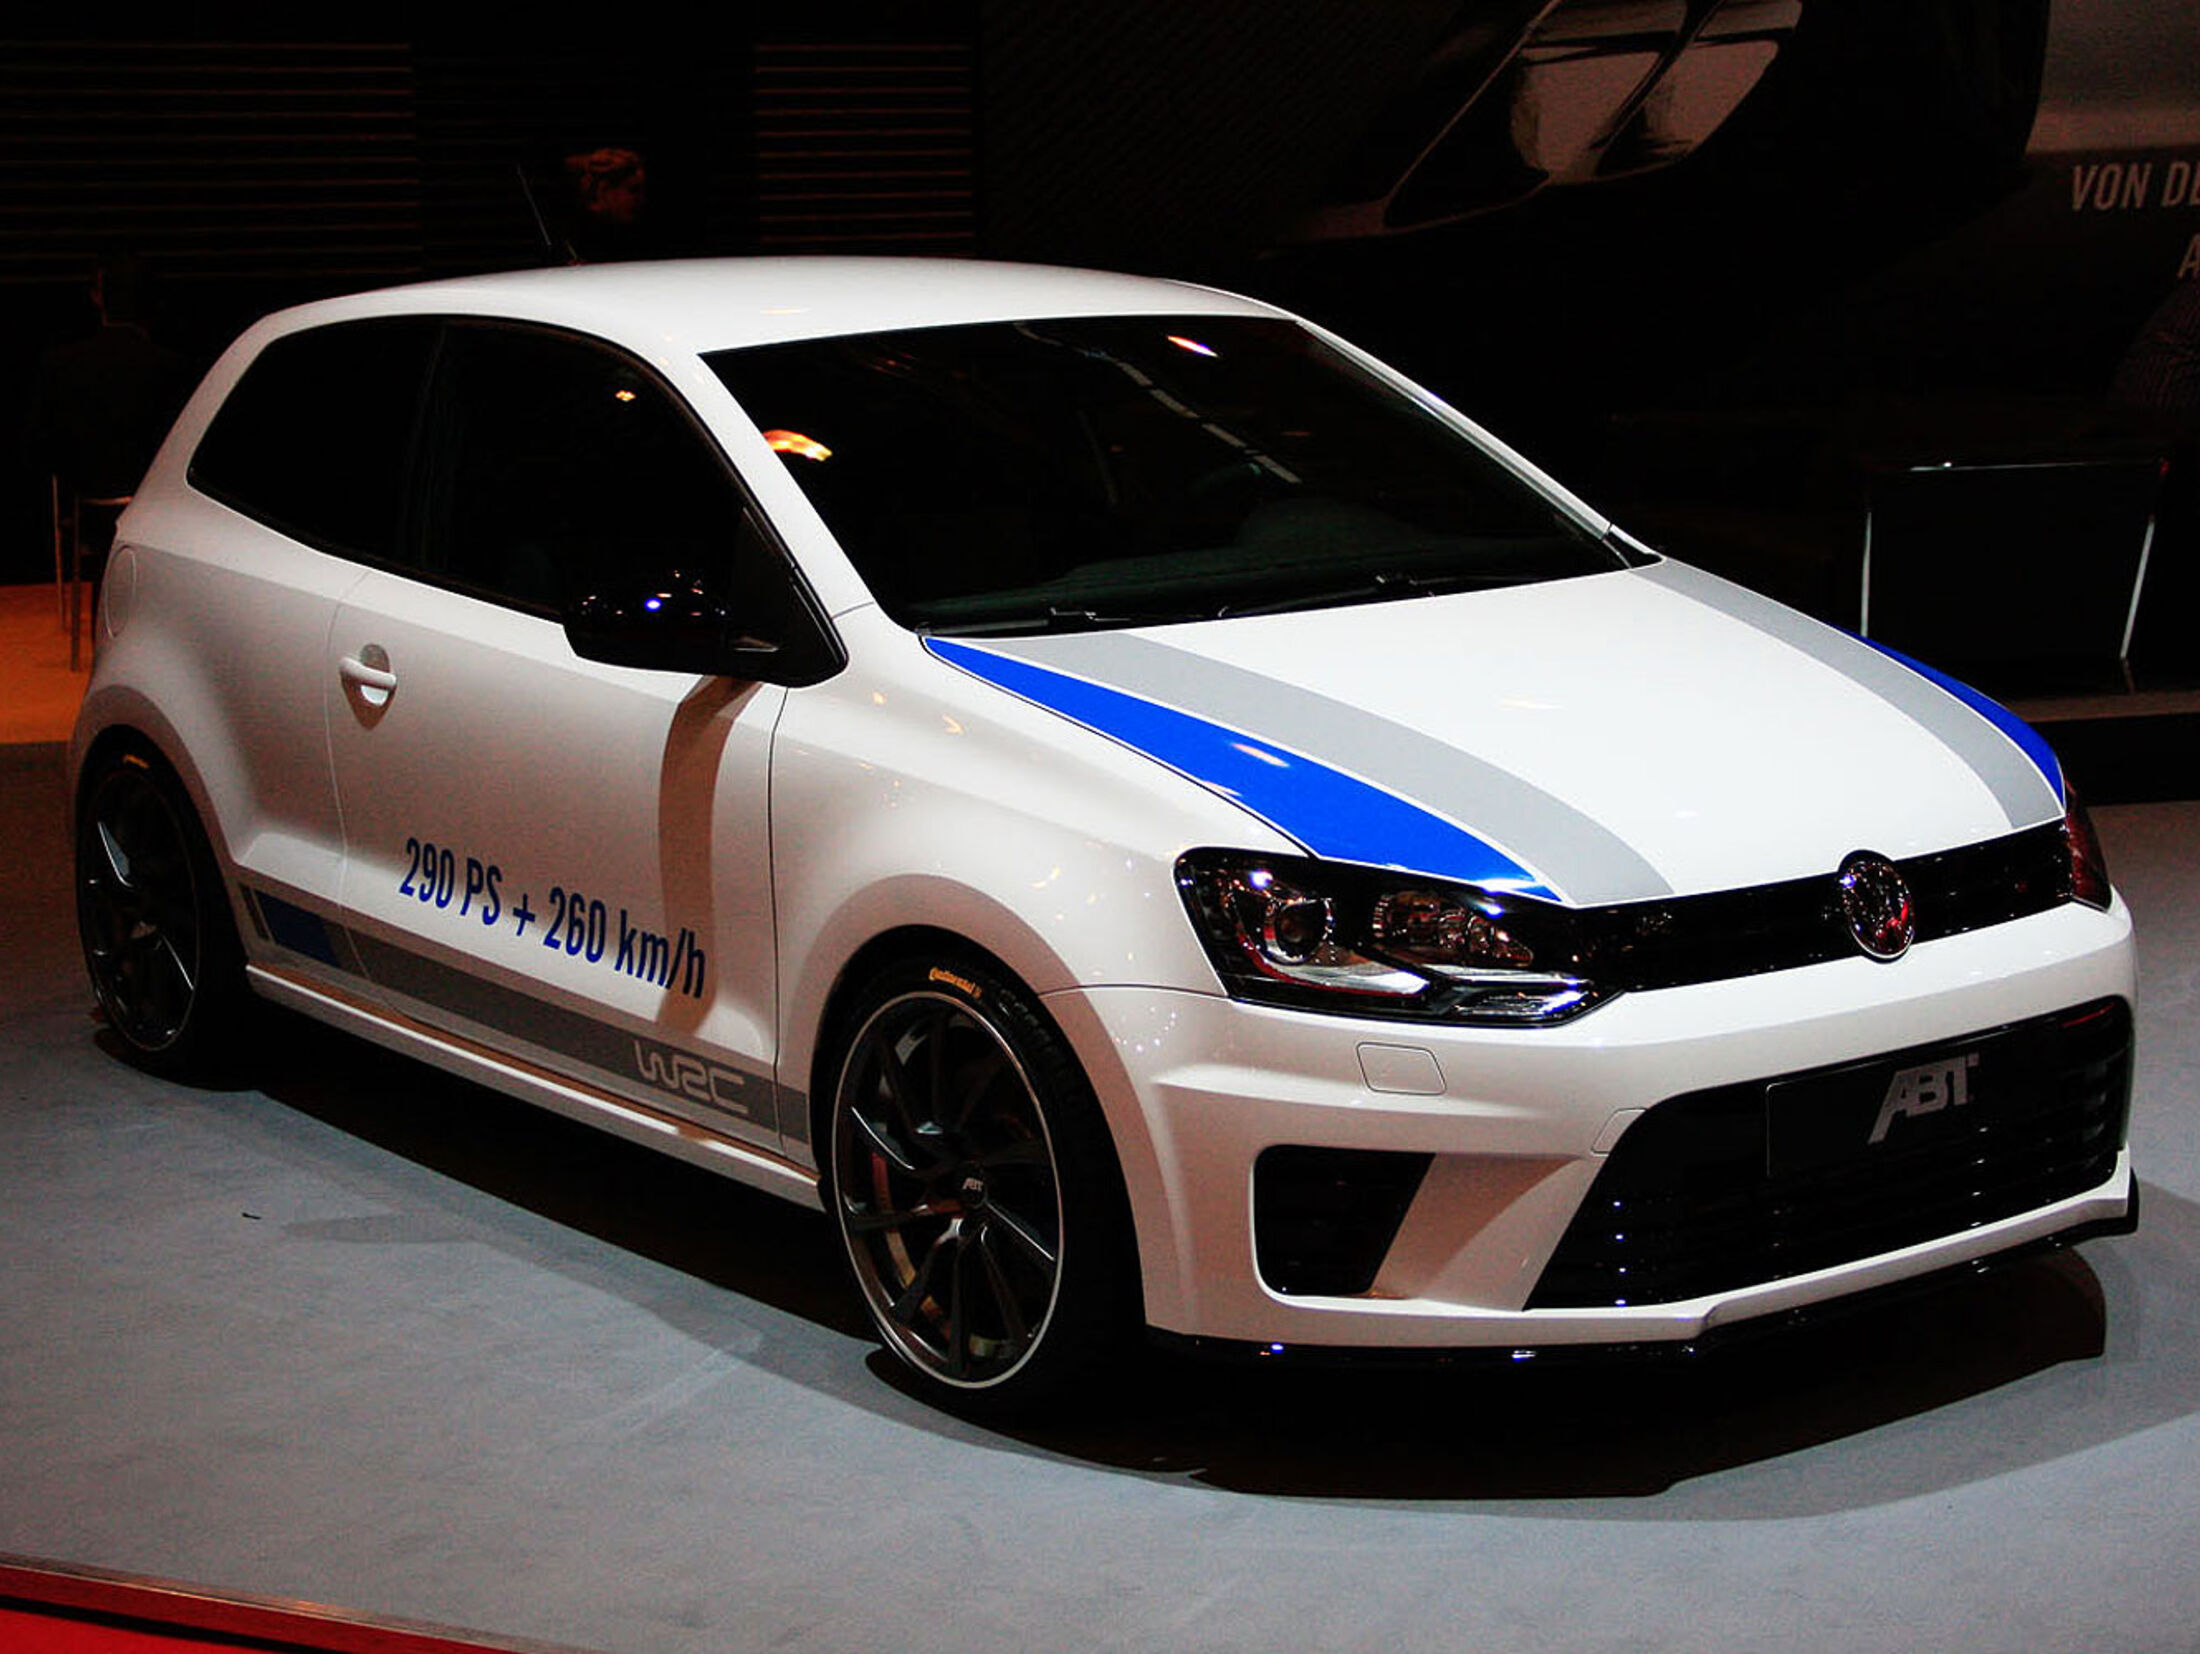 VW Polo WRC auf der Essen Motor Show: Innen hui, außen pfui